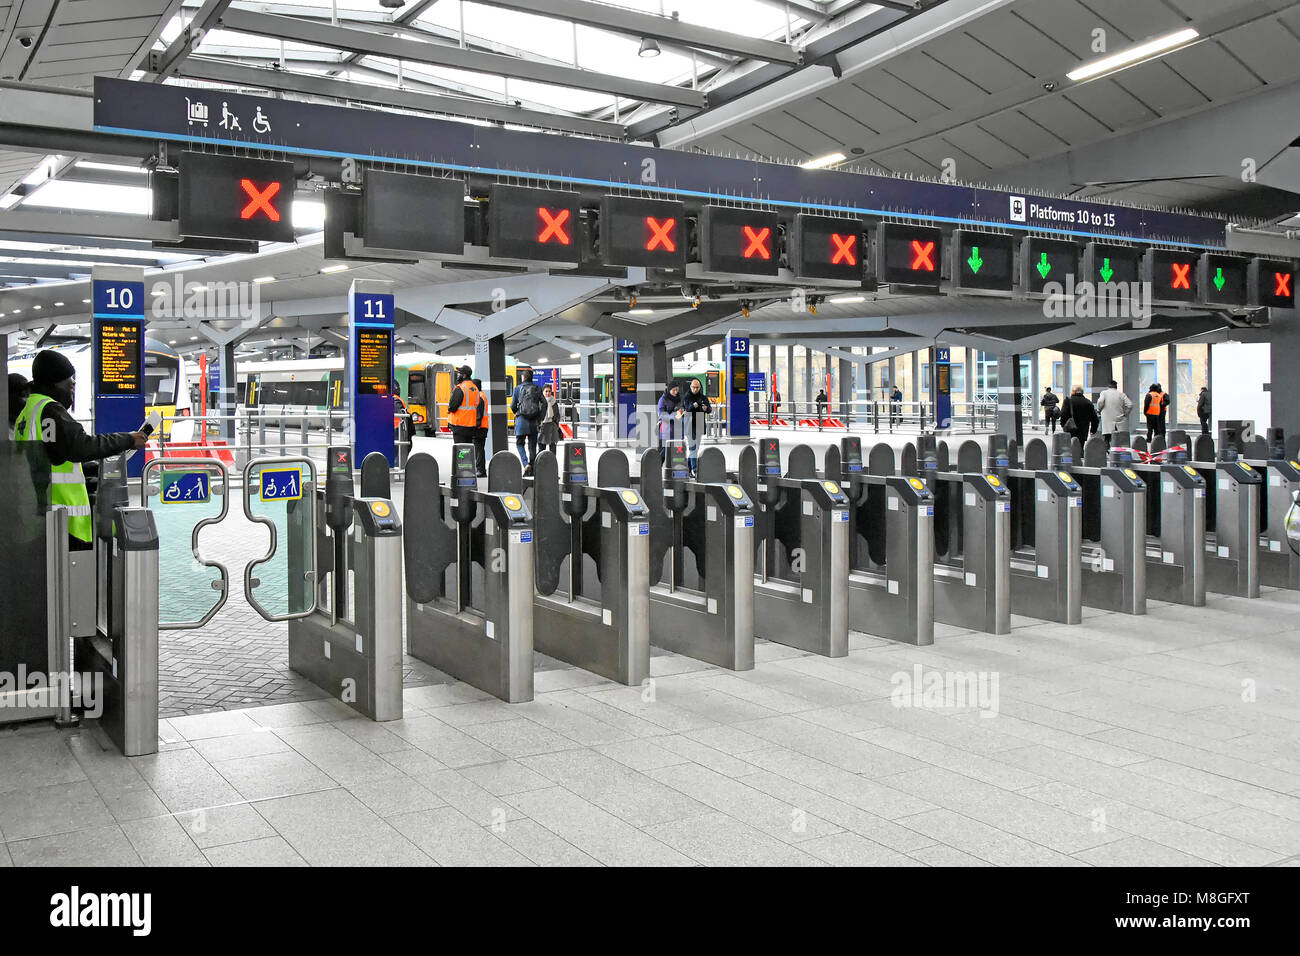 Gare de train à travers la porte d'obstacles ticket grand et audacieux de la plate-forme open red vert icône de l'indicateur de l'accès fermé au-dessus de la Station London Bridge UK Banque D'Images